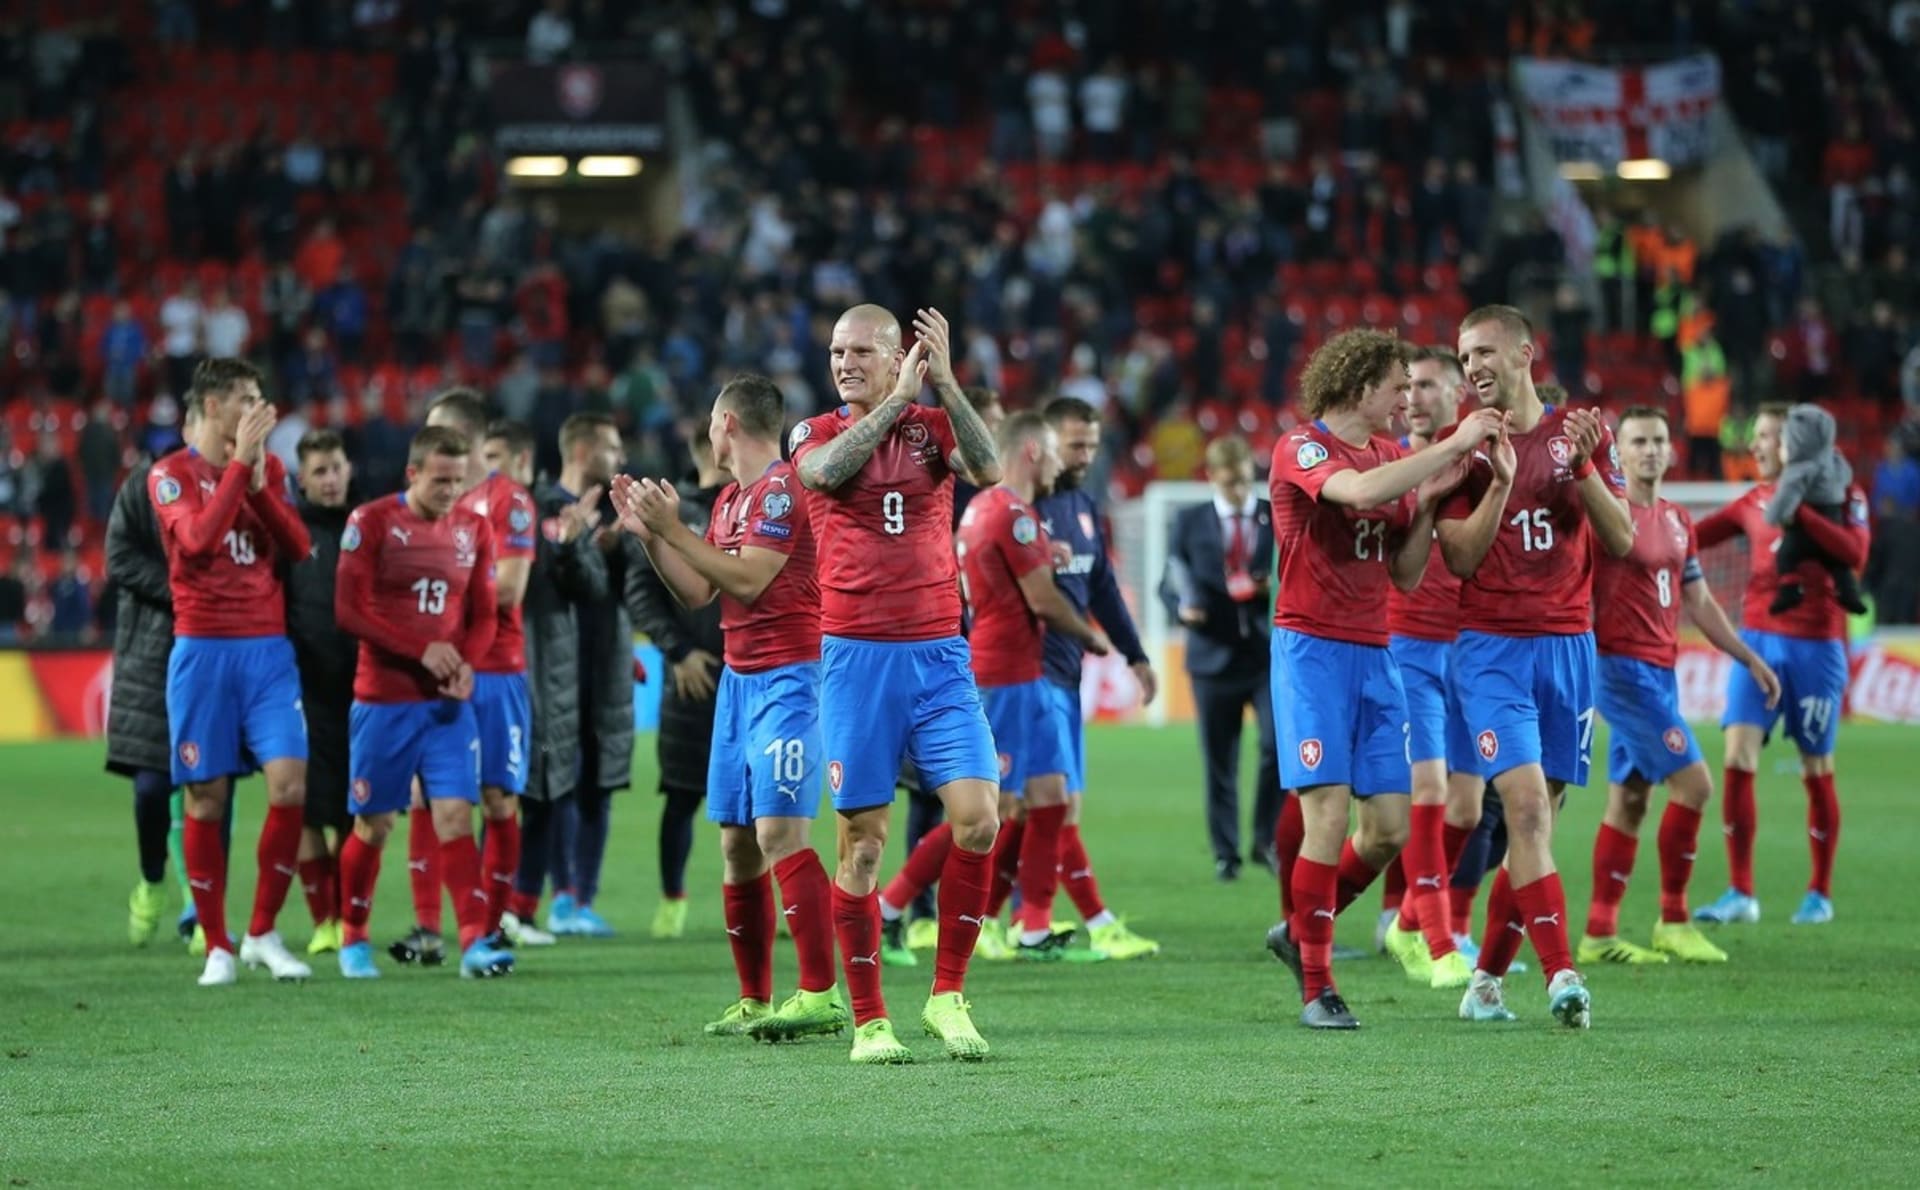 Budou čeští fotbalisté takto spokojení i po úterním zápase s Anglií? Na podzim 2019 se jim velkého favorita povedlo porazit.